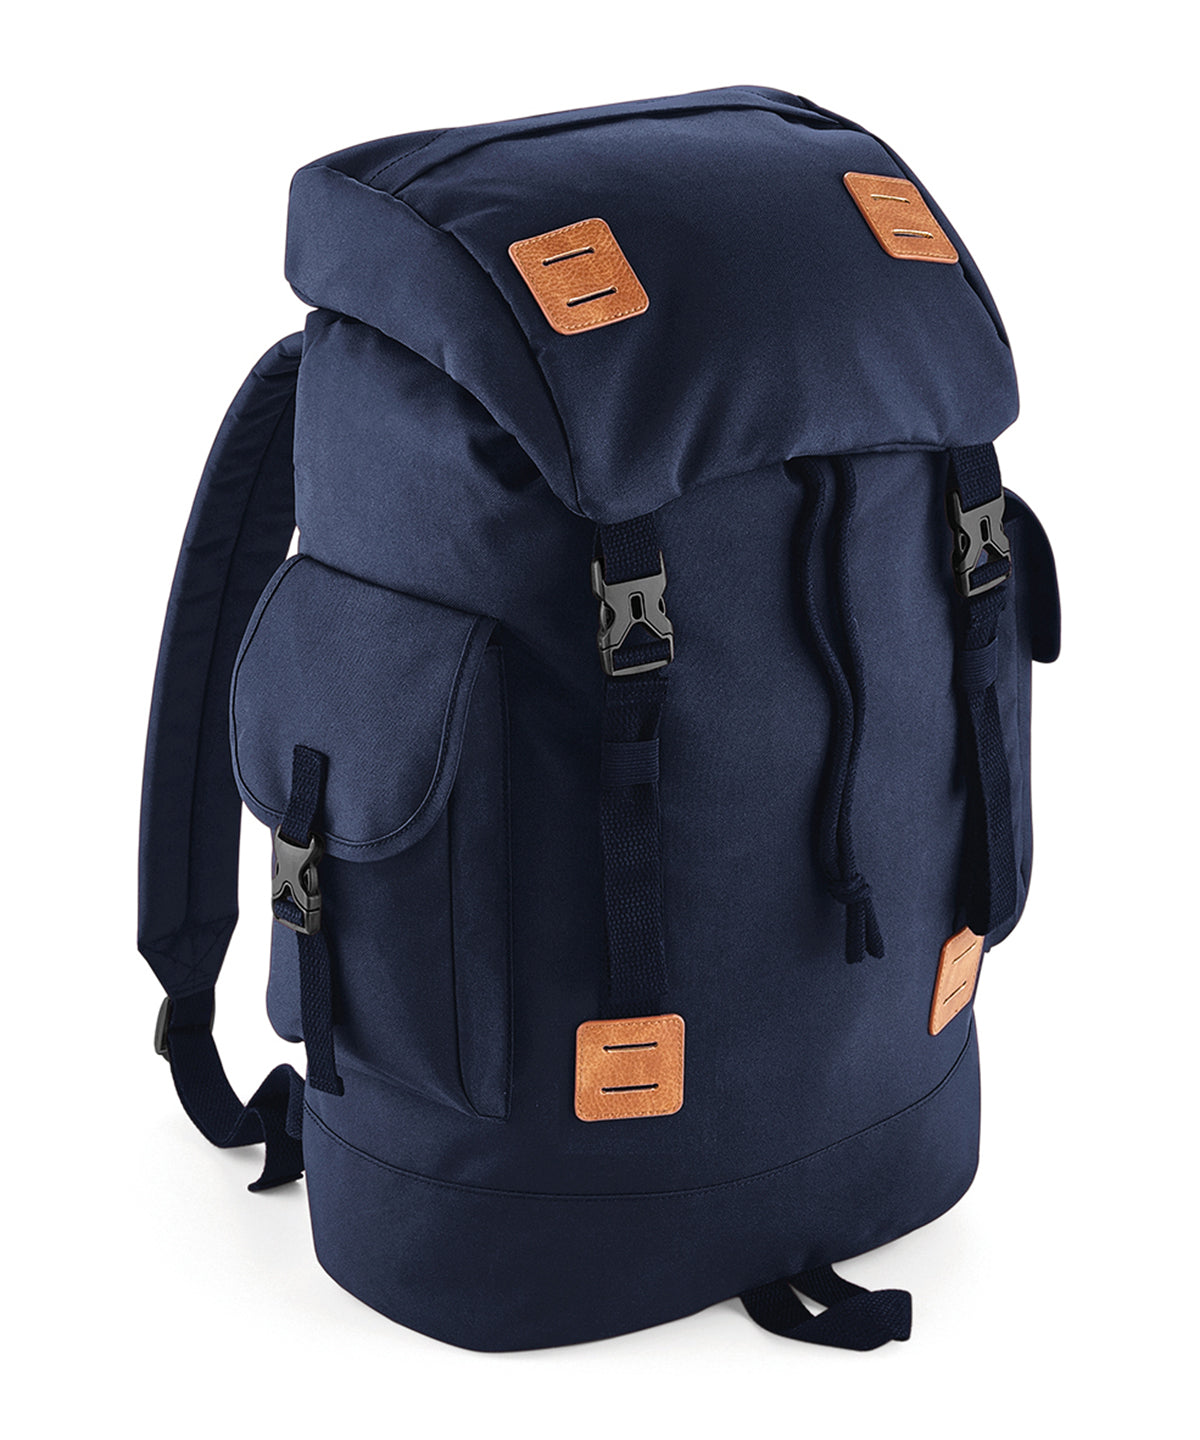 Töskur - Urban Explorer Backpack